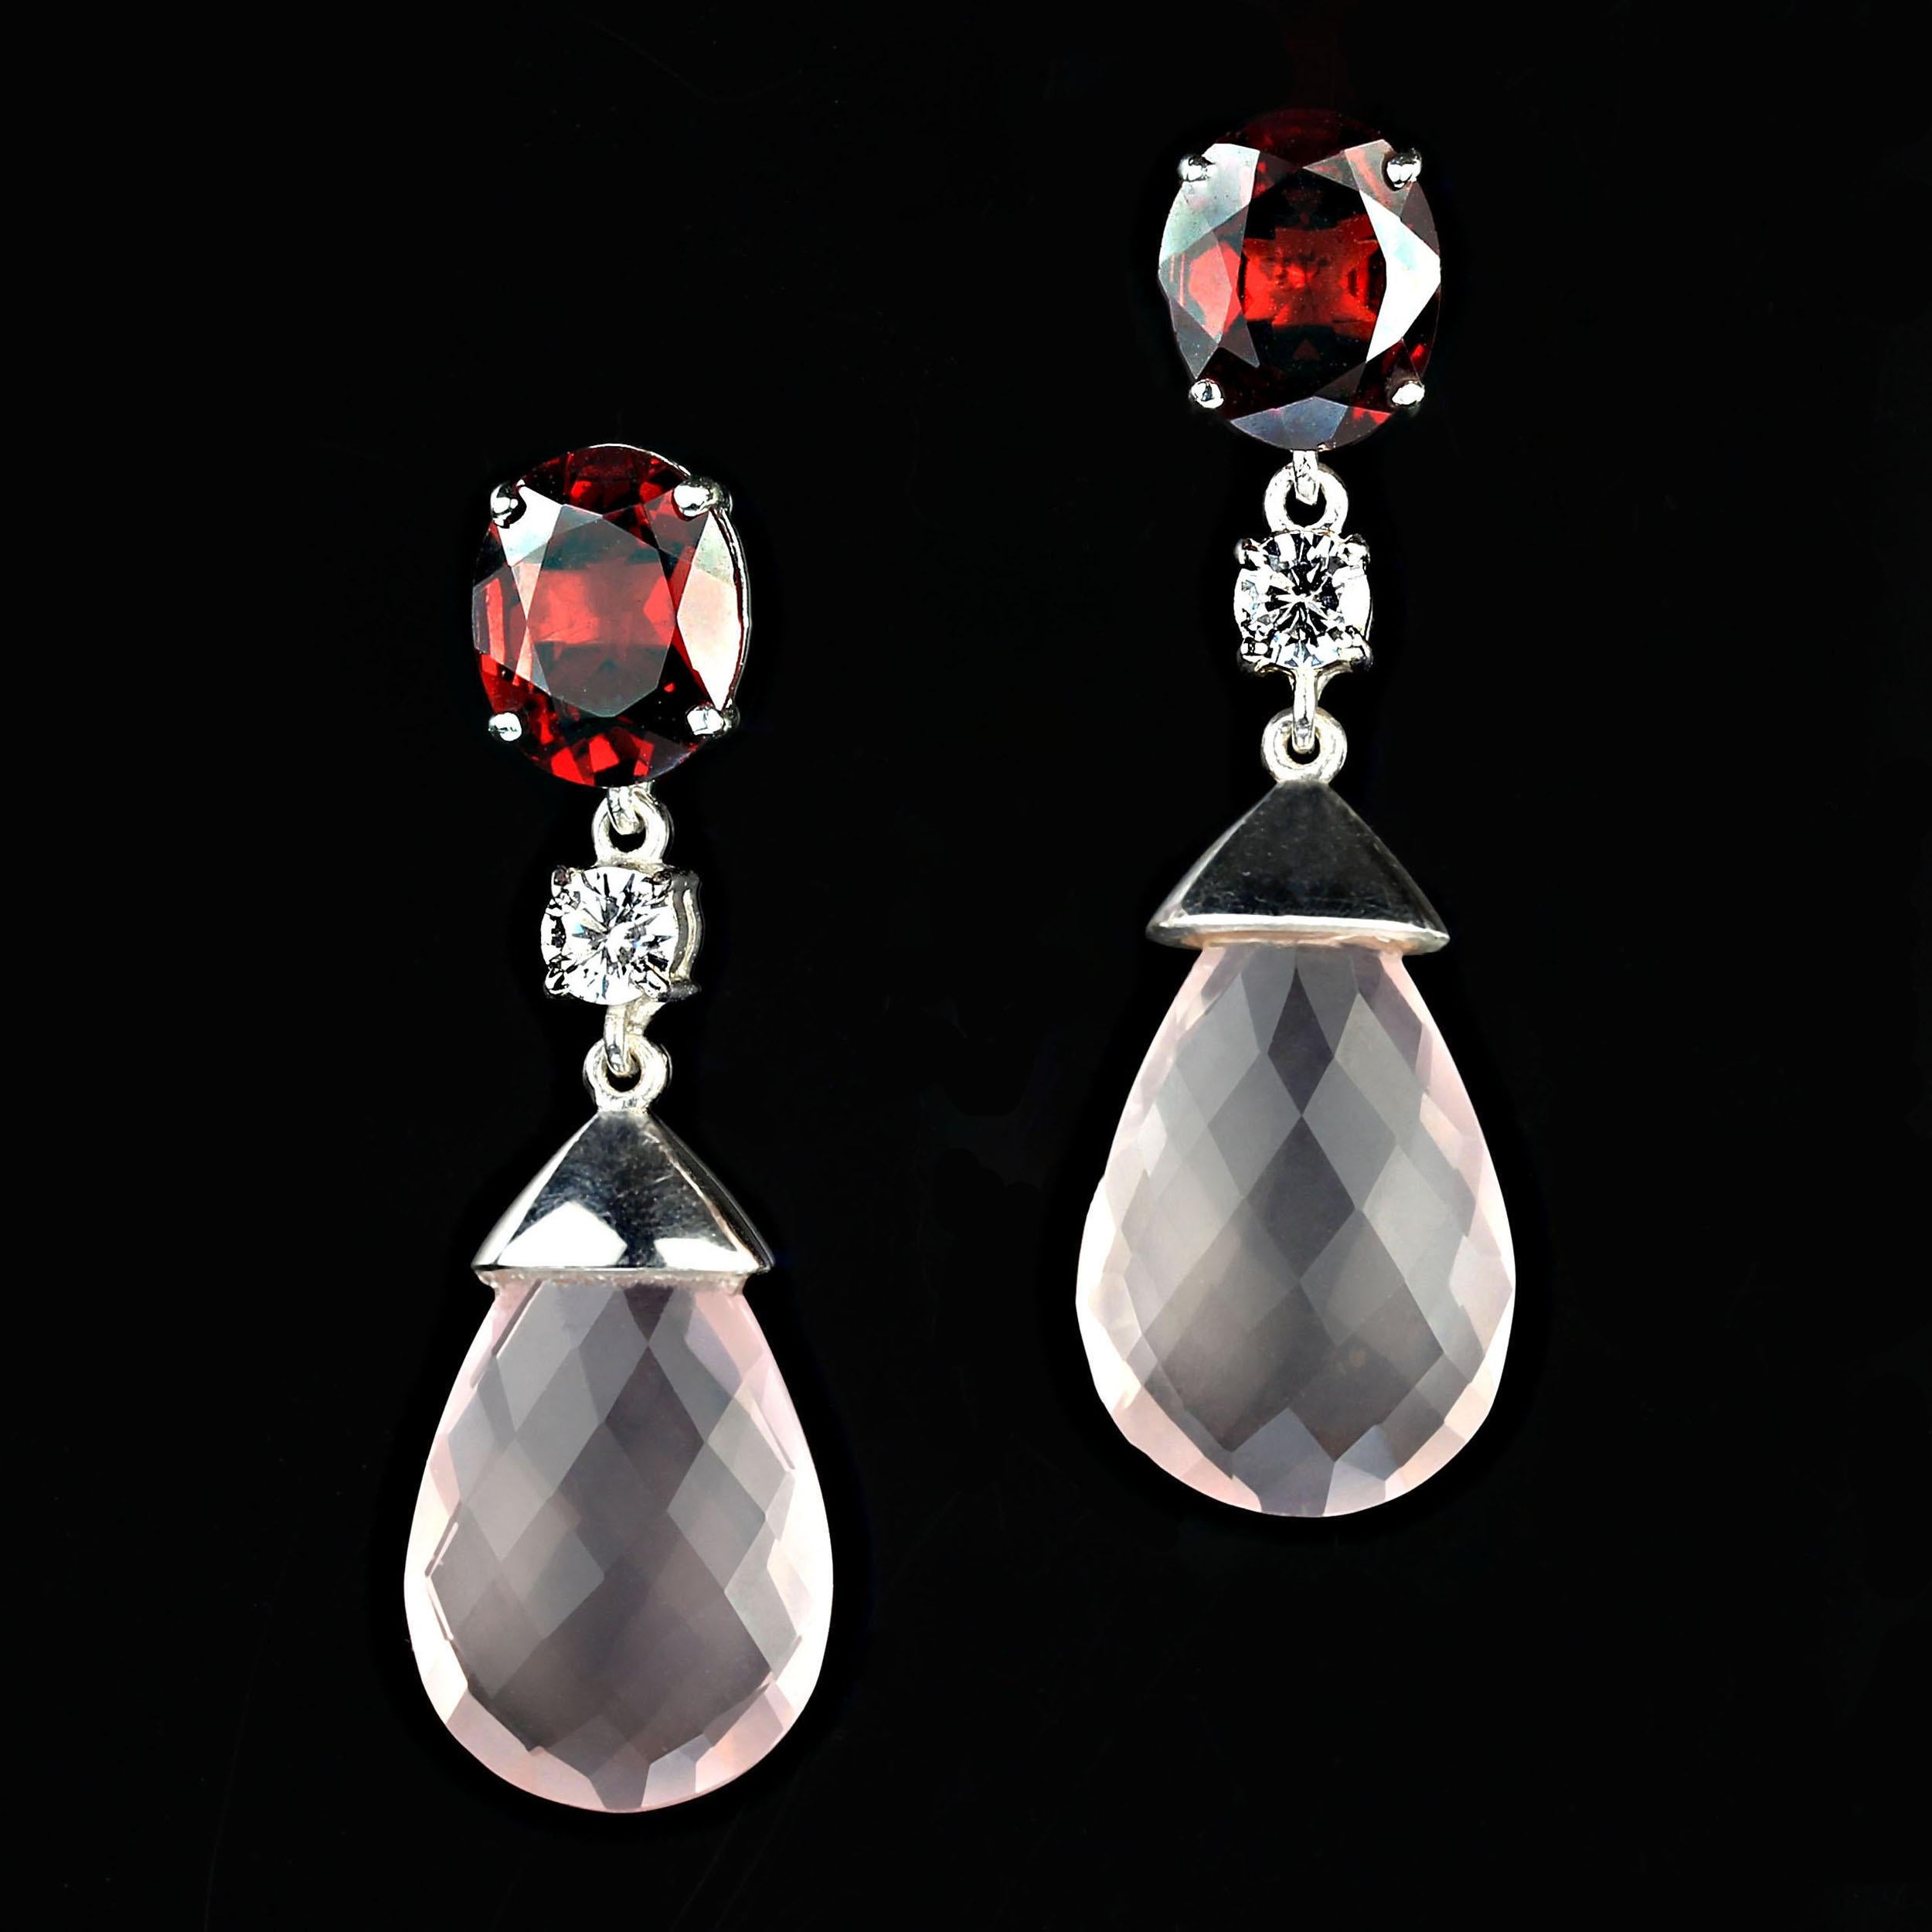 Taille ovale AJD Boucles d'oreilles romantiques en argent sterling, quartz rose et grenat